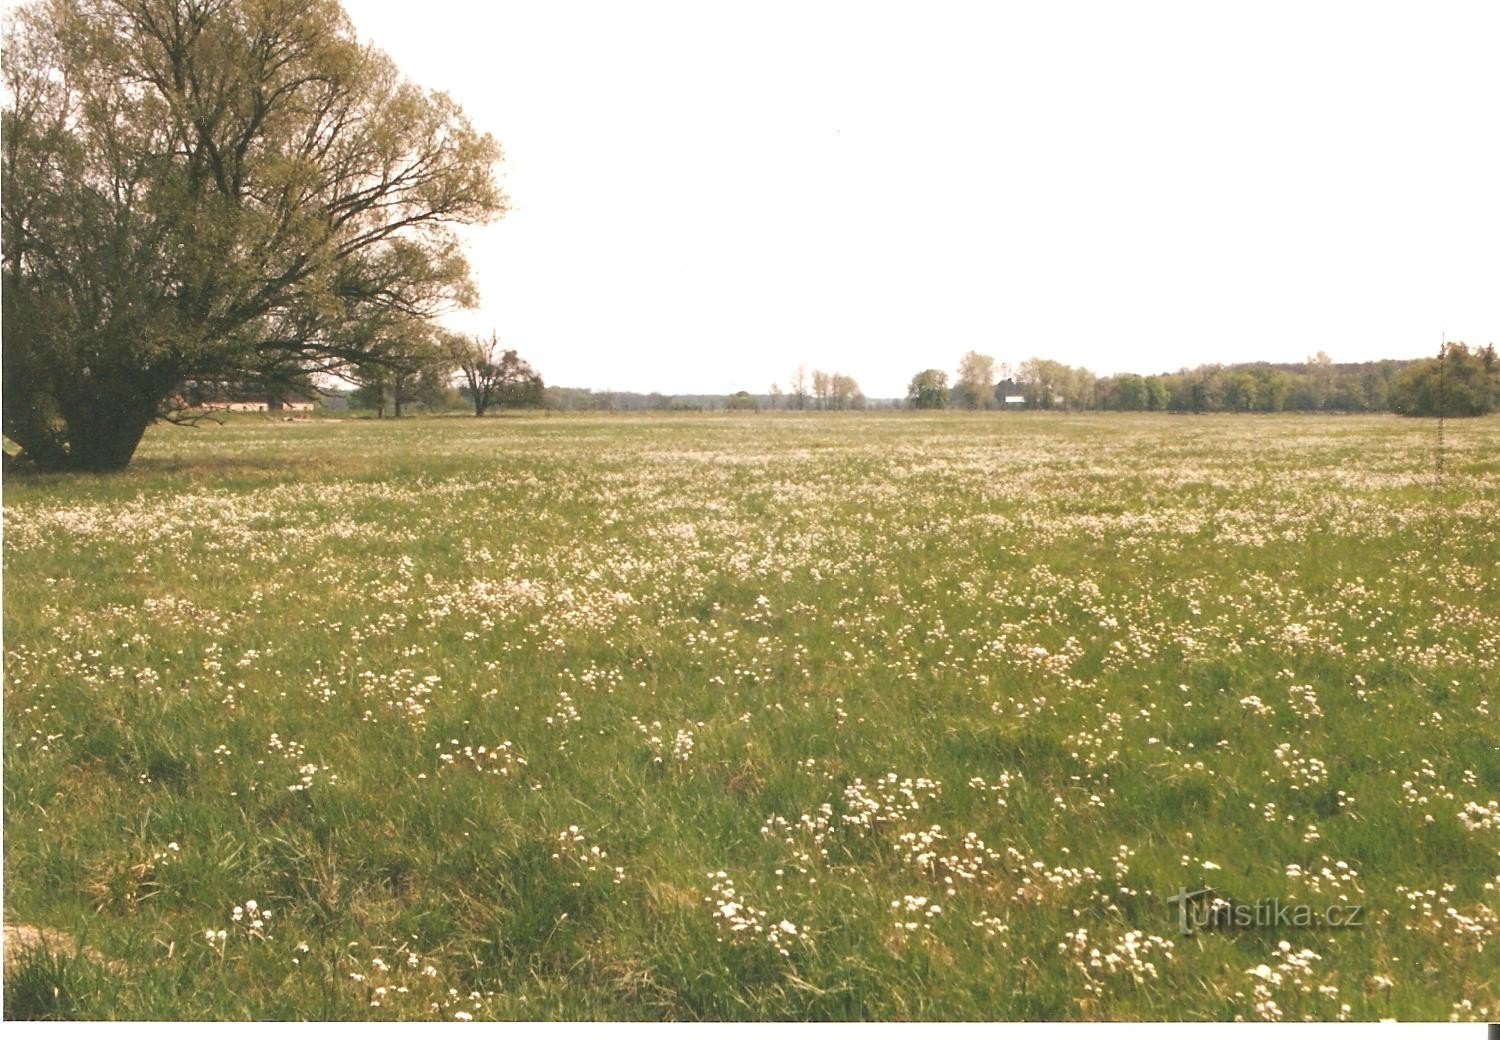 Đồng cỏ Lansk vào mùa xuân